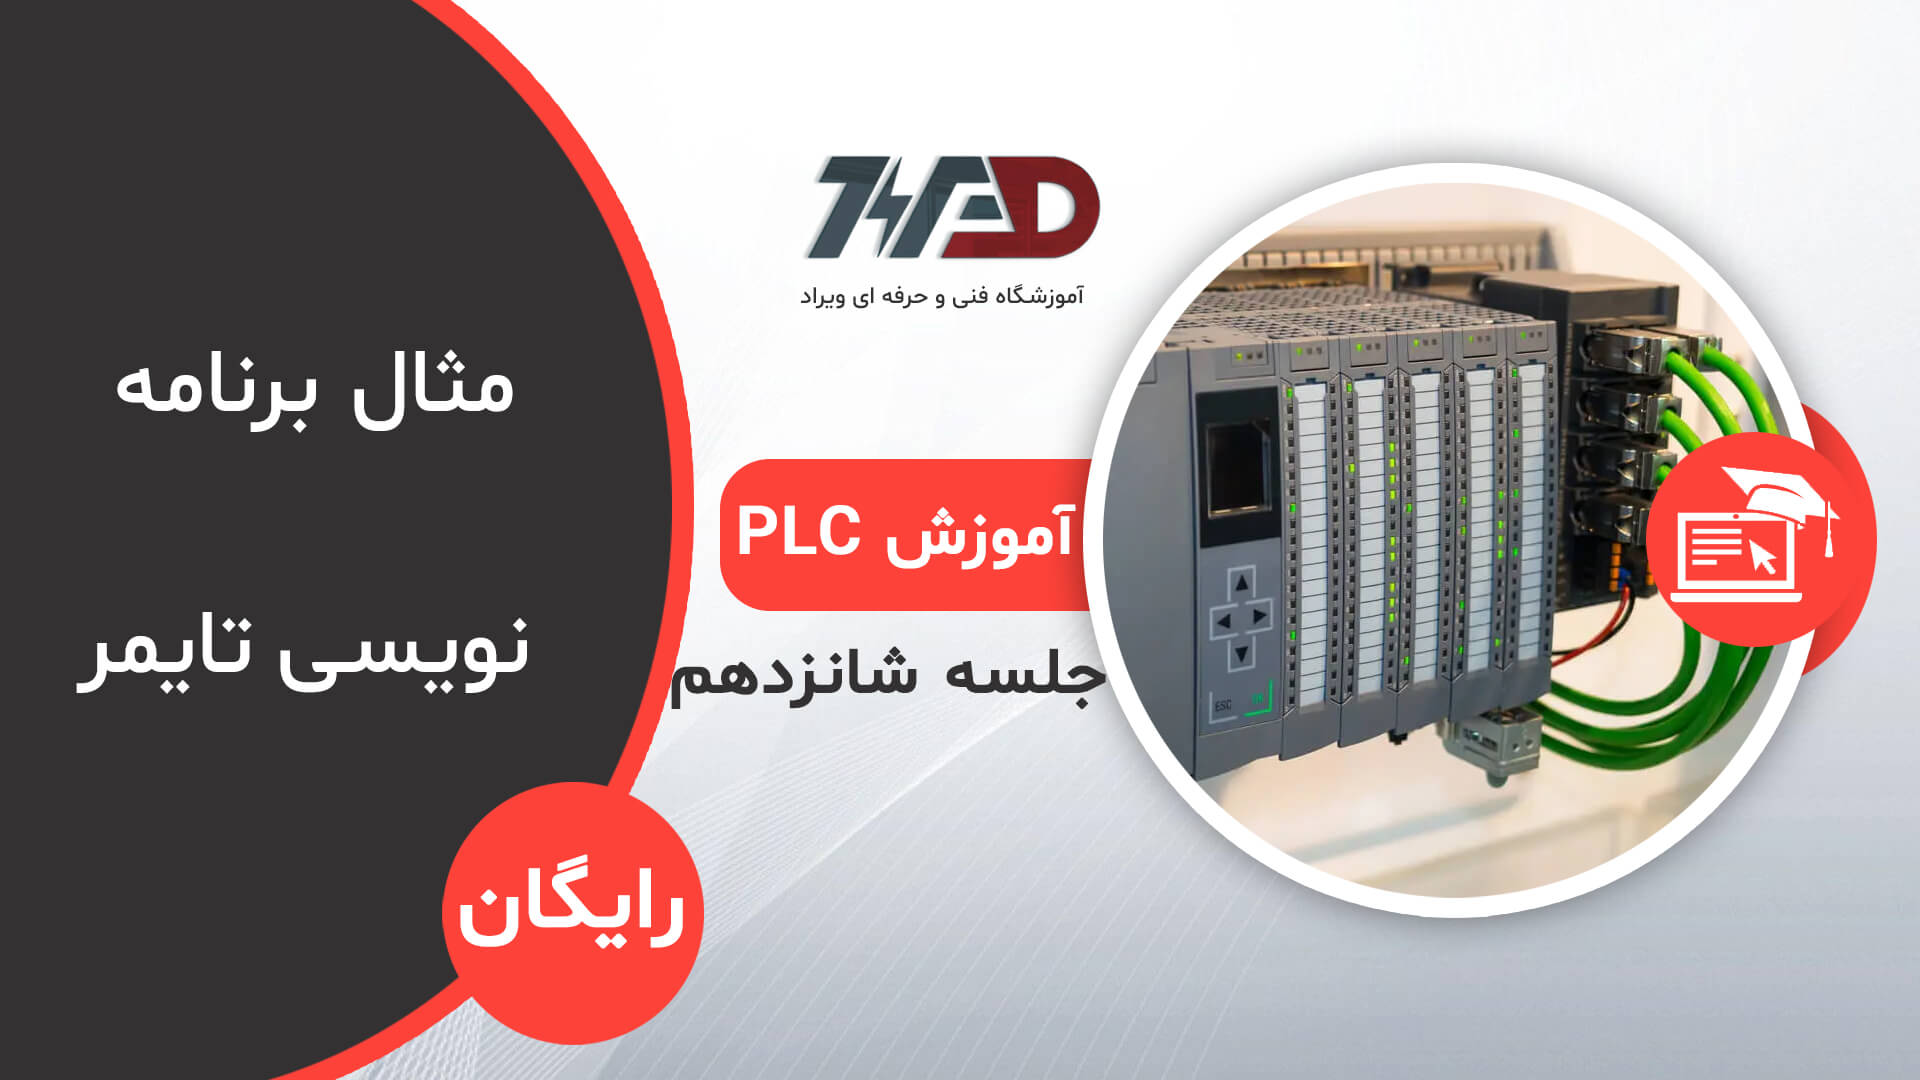 شانزدهمین قسمت از دوره رایگان PLC پی ال سی ، دوره رایگان PLC شماره (16)- مثال برنامه نویسی تایمر تاخیر در وصل و تاخیر در قطع